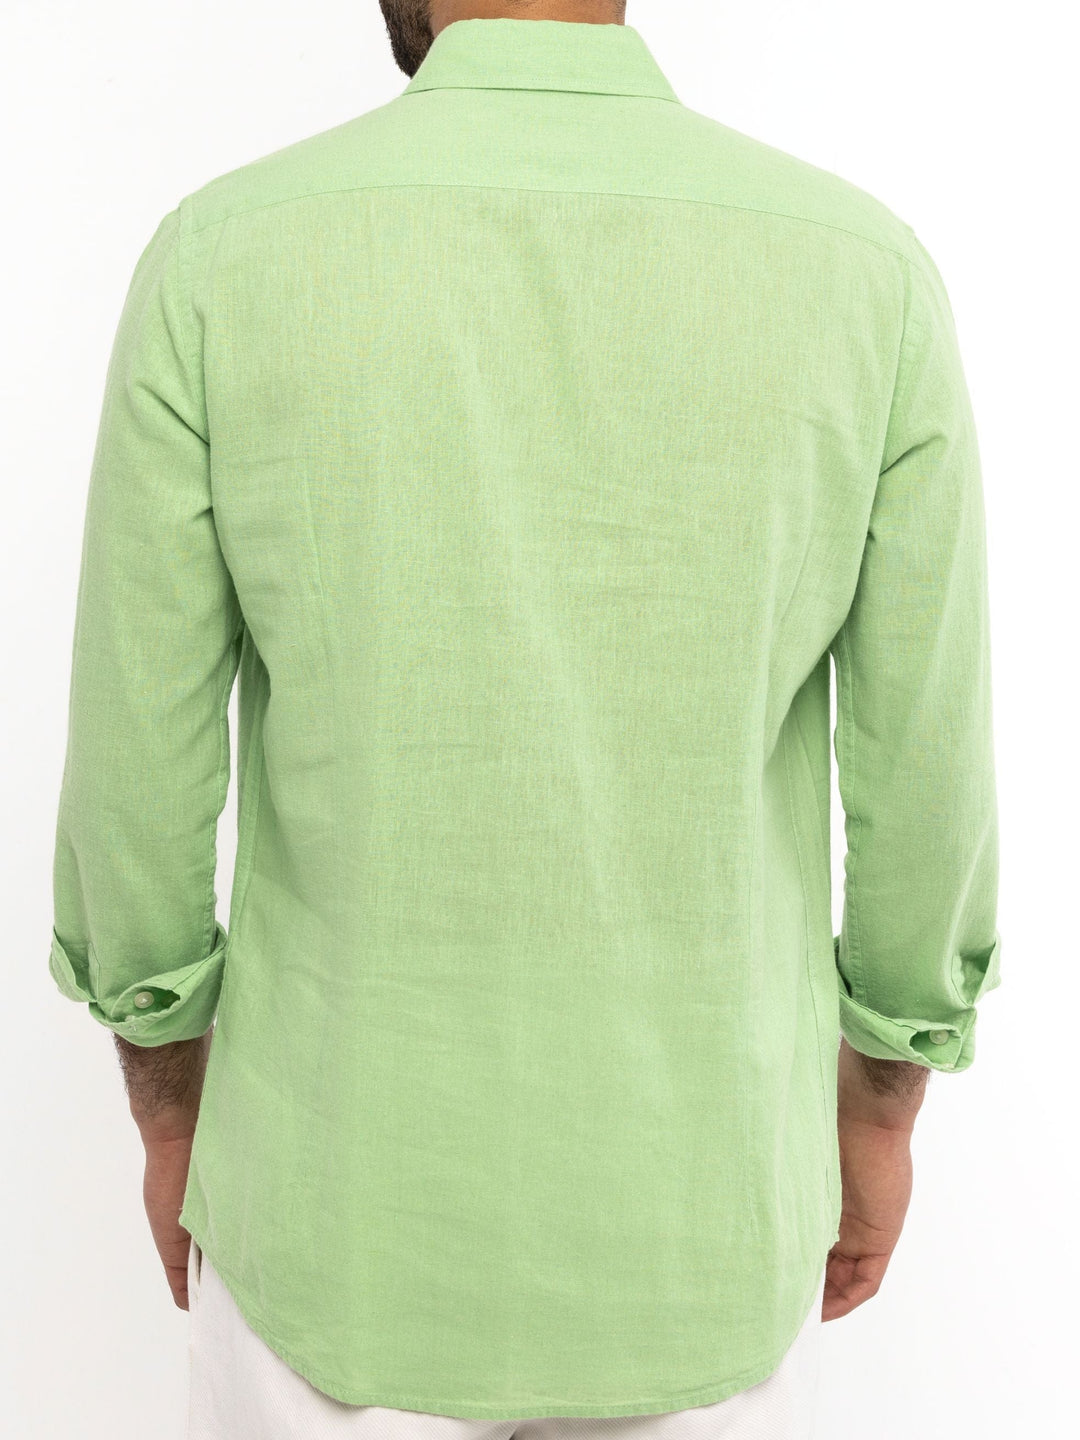 Zhivago x Nuuk Men Linen Shirt Light Green Linen Shirt